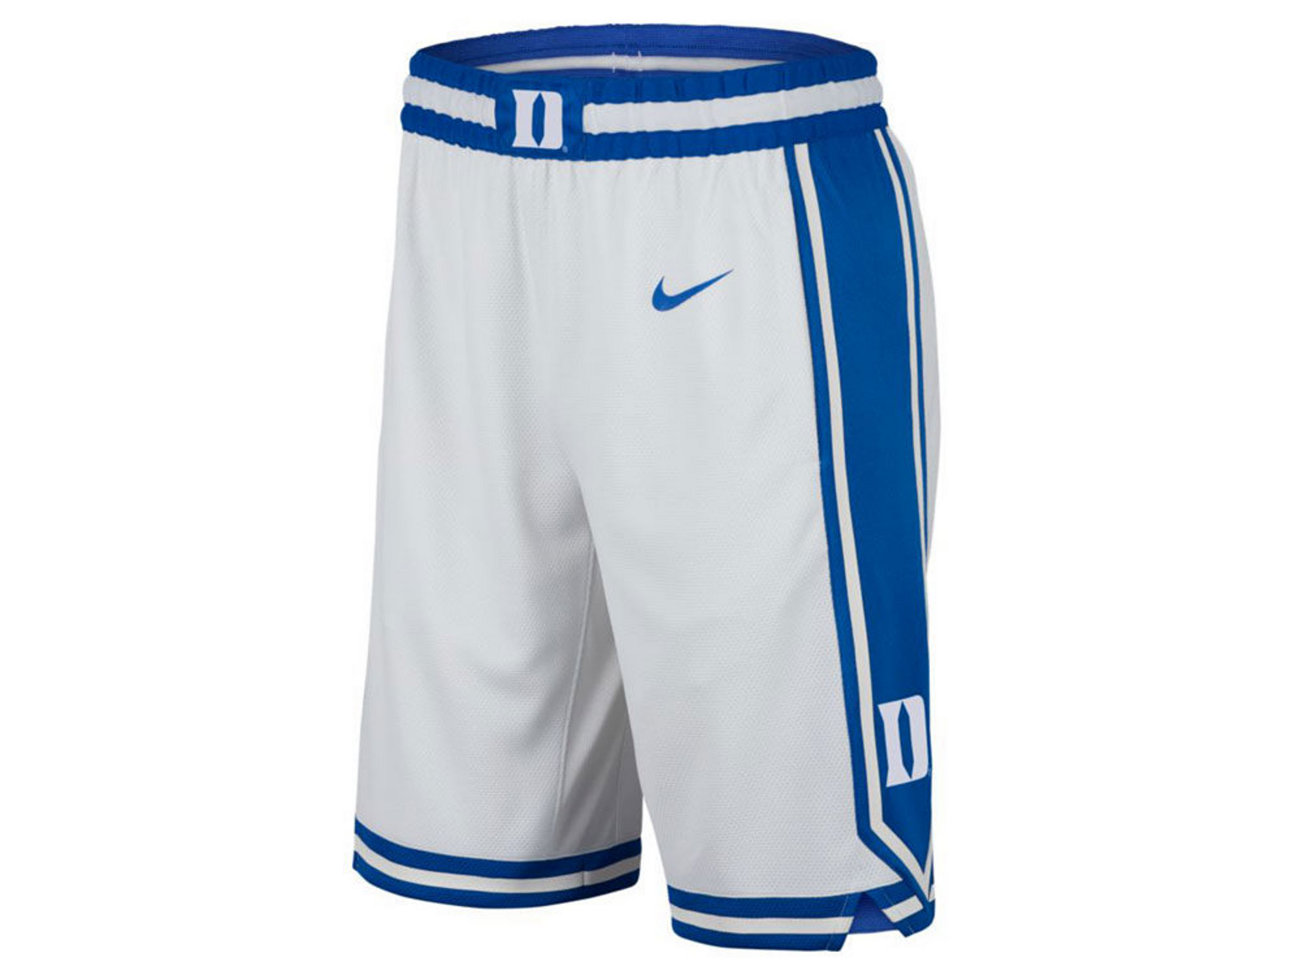 Реплика мужских баскетбольных домашних шорт Duke Blue Devils Nike